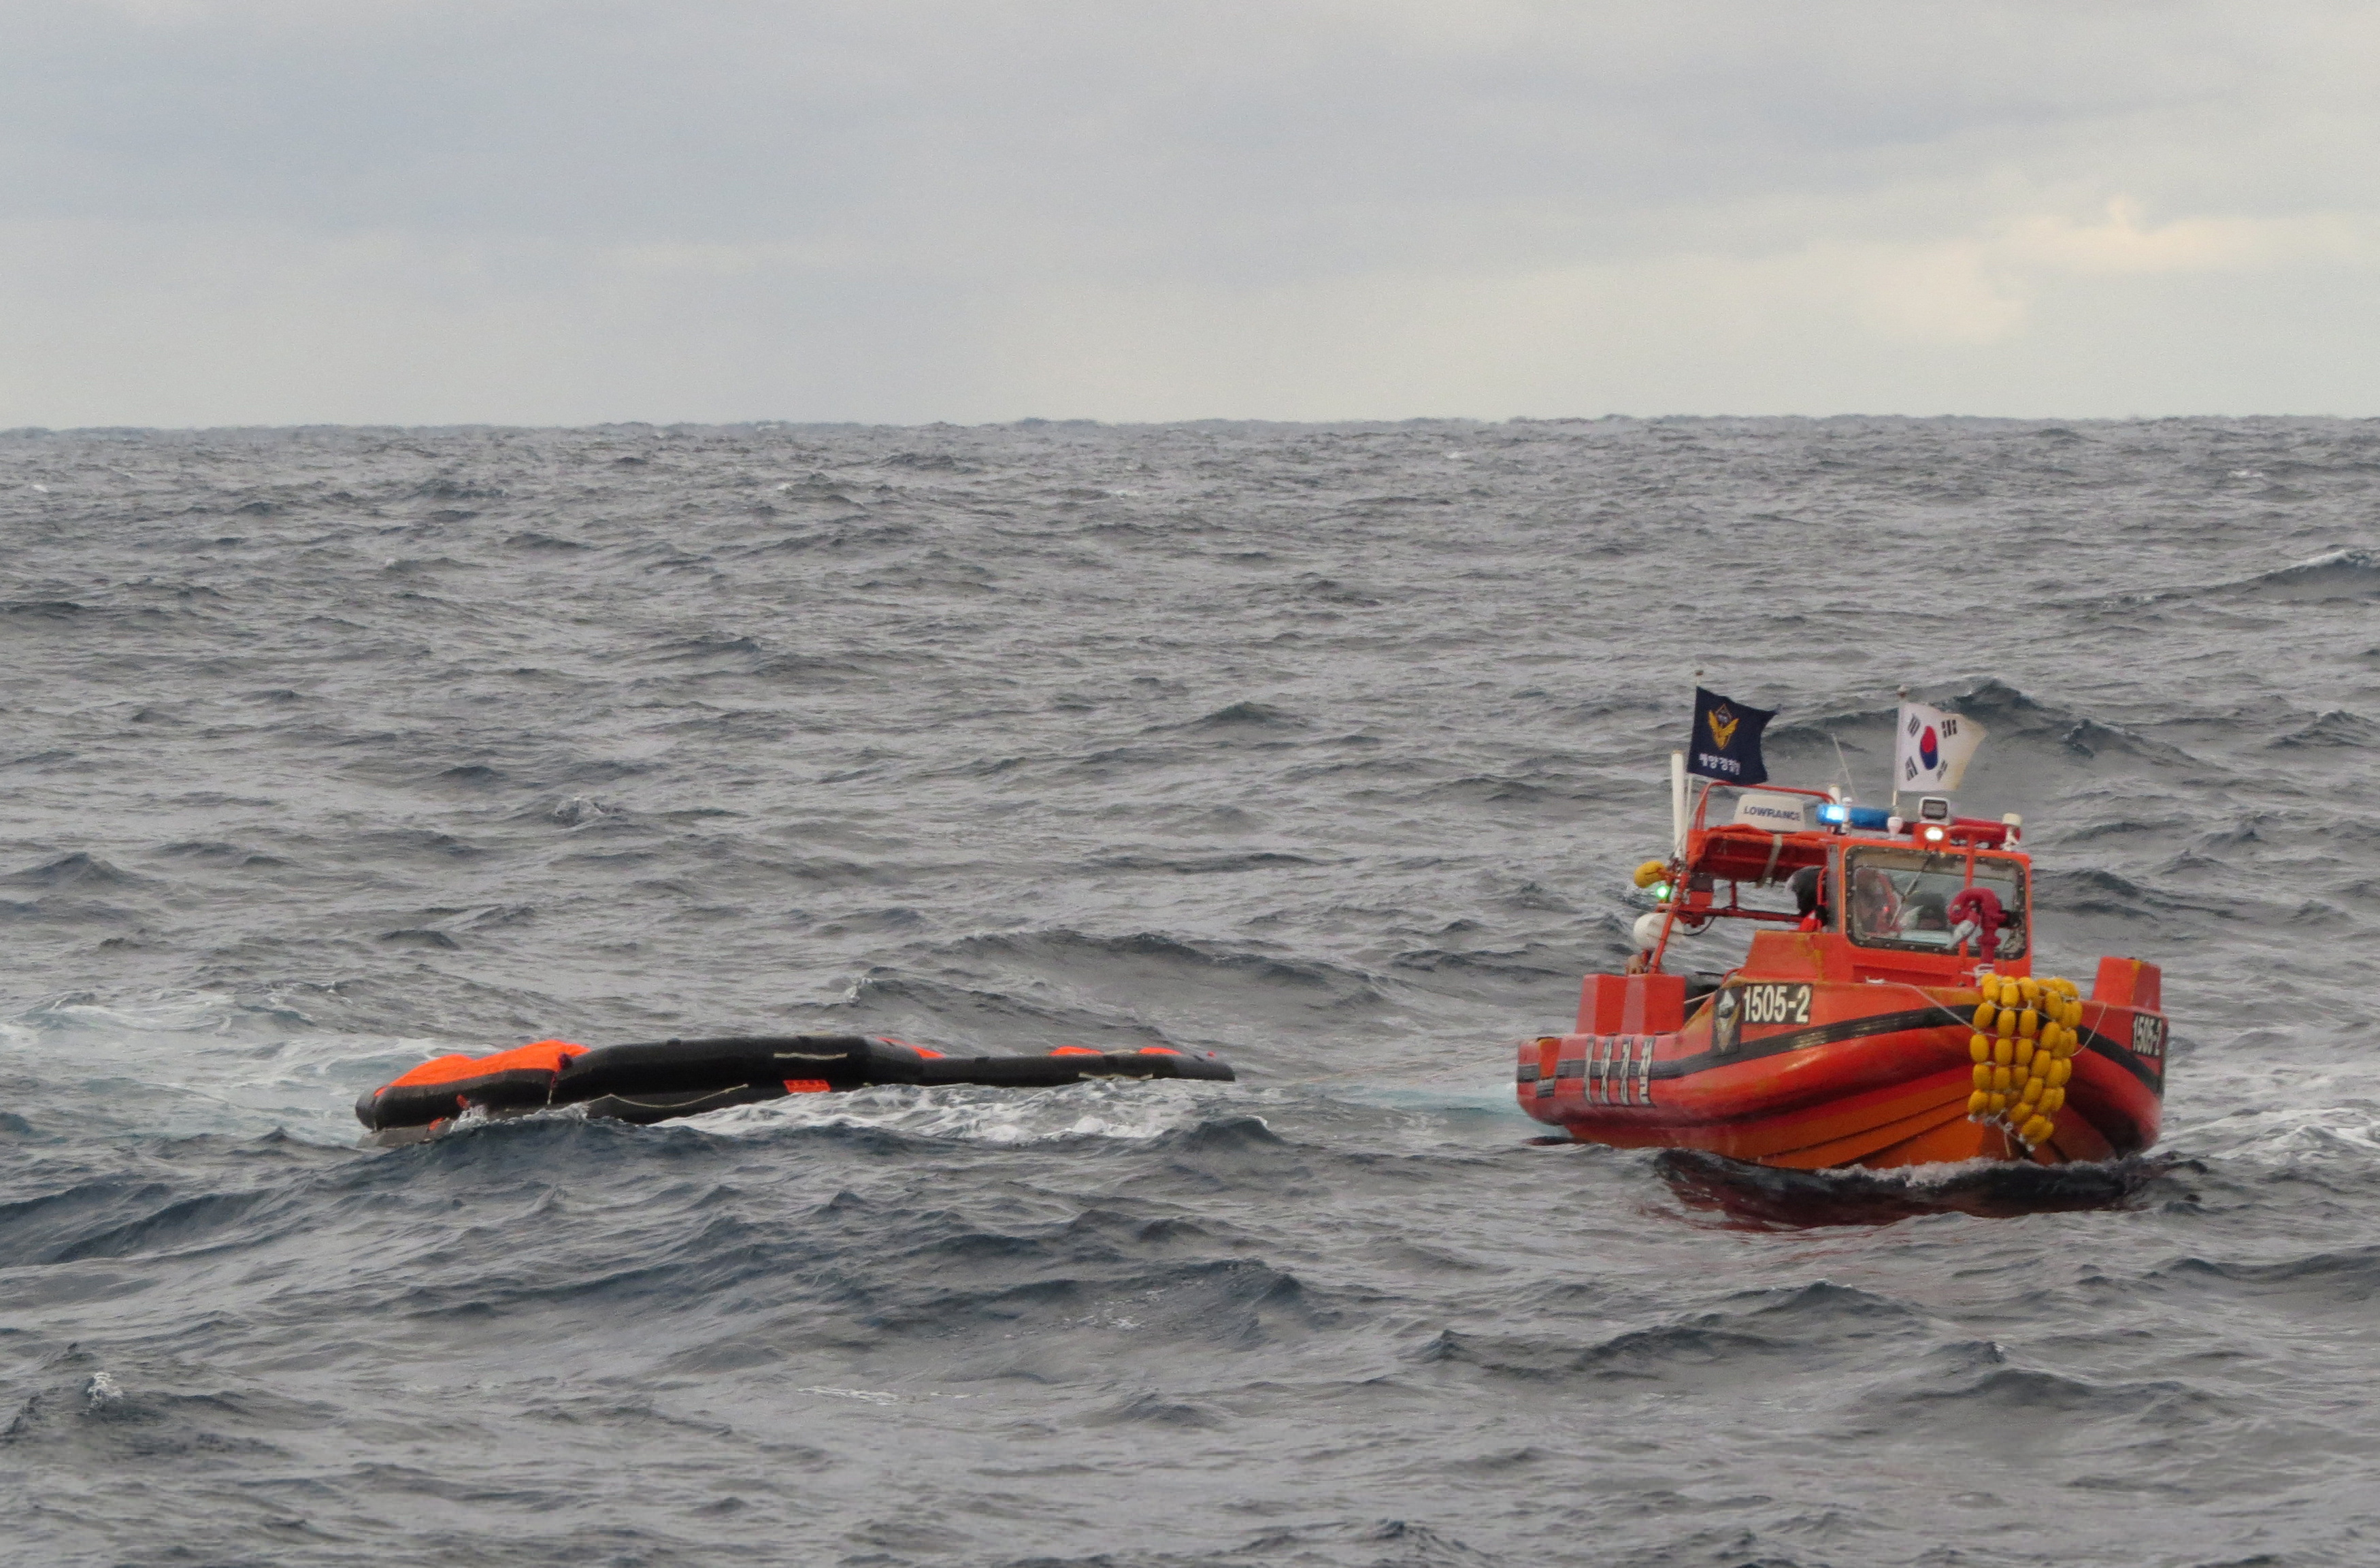 Los equipos de rescate creen que los desaparecidos podrían estar a la deriva en botes salvavidas, a partir de las informaciones de tres buques privados que navegaban por la zona en el momento del incidente y rescataron a cinco de los tripulantes. (REUTERS)